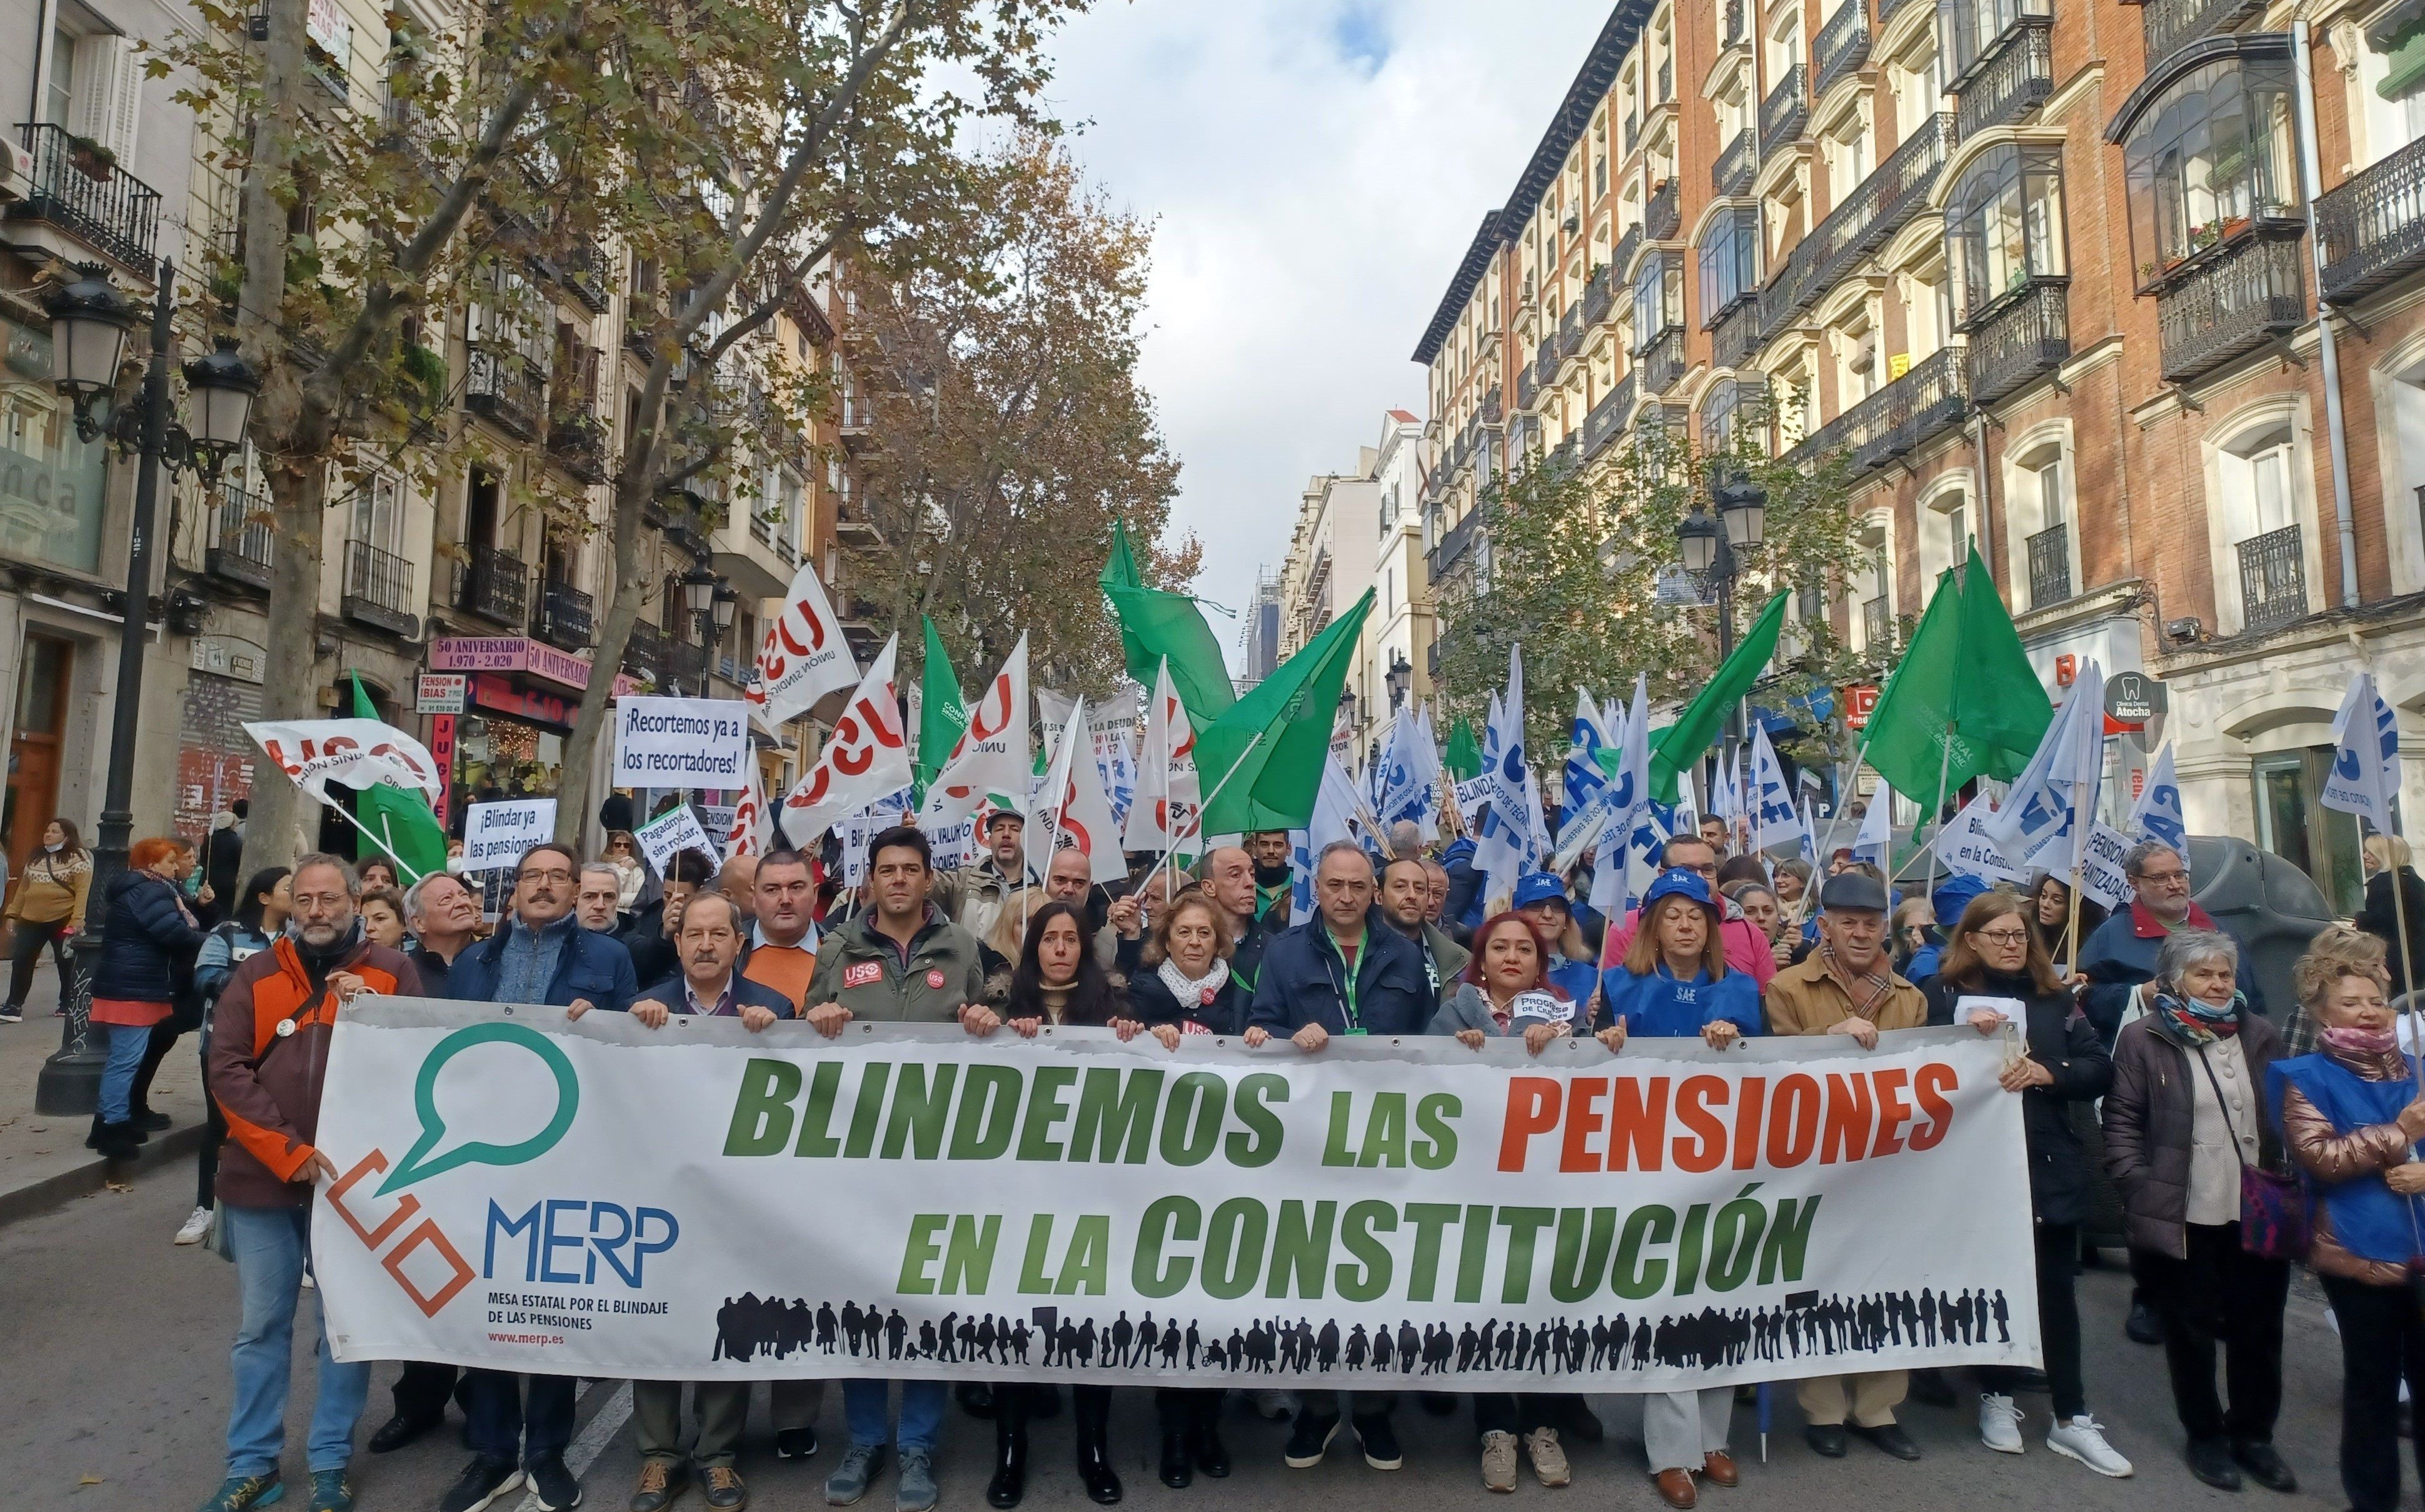 La MERP lanza la campaña 'Somos 47 millones' en Madrid: "Todos llevamos un pensionista dentro"